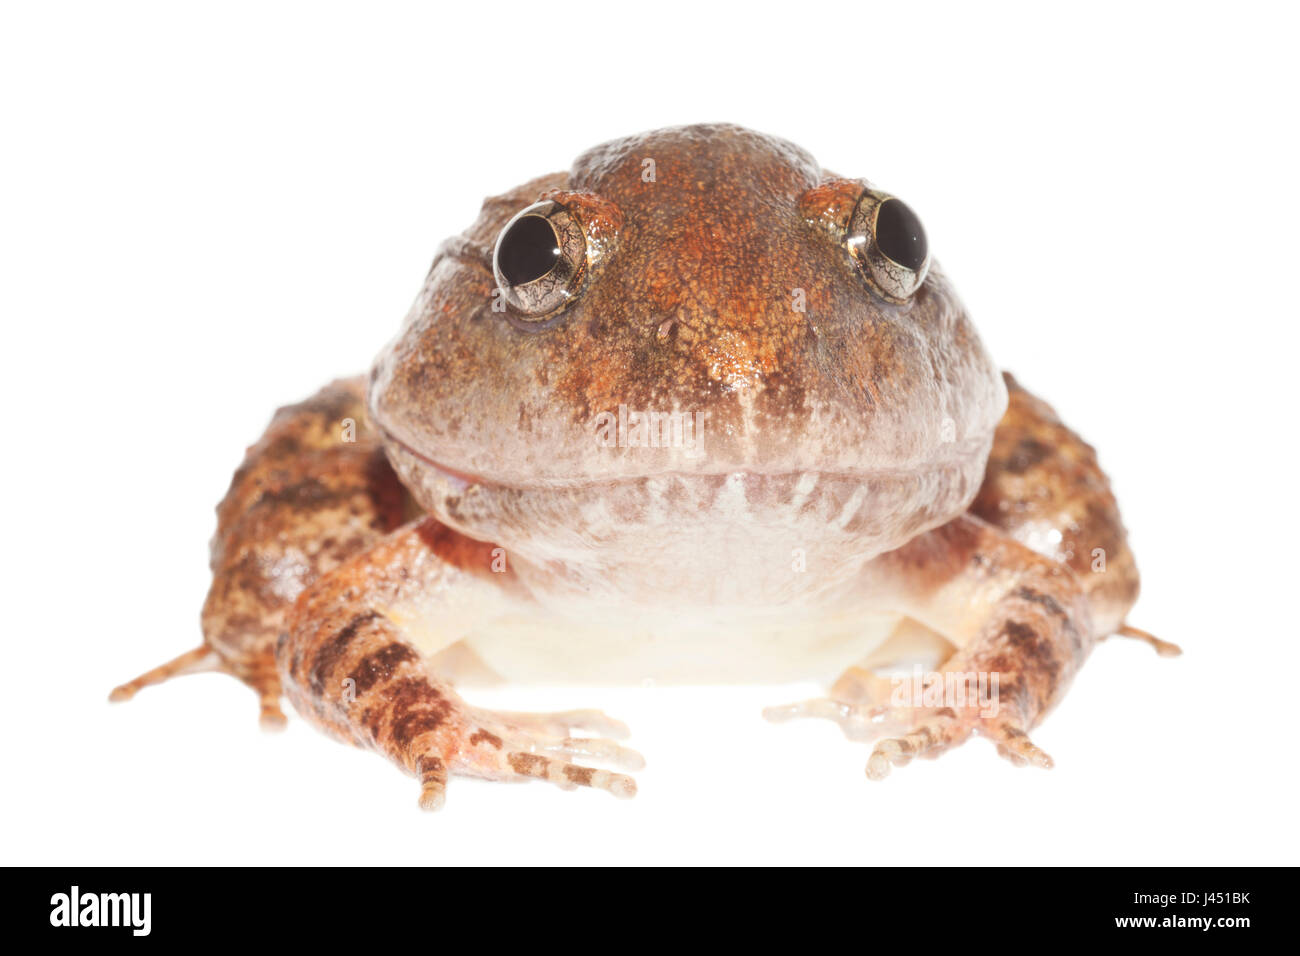 La Glydenstolpe frog isolata contro uno sfondo bianco Foto Stock